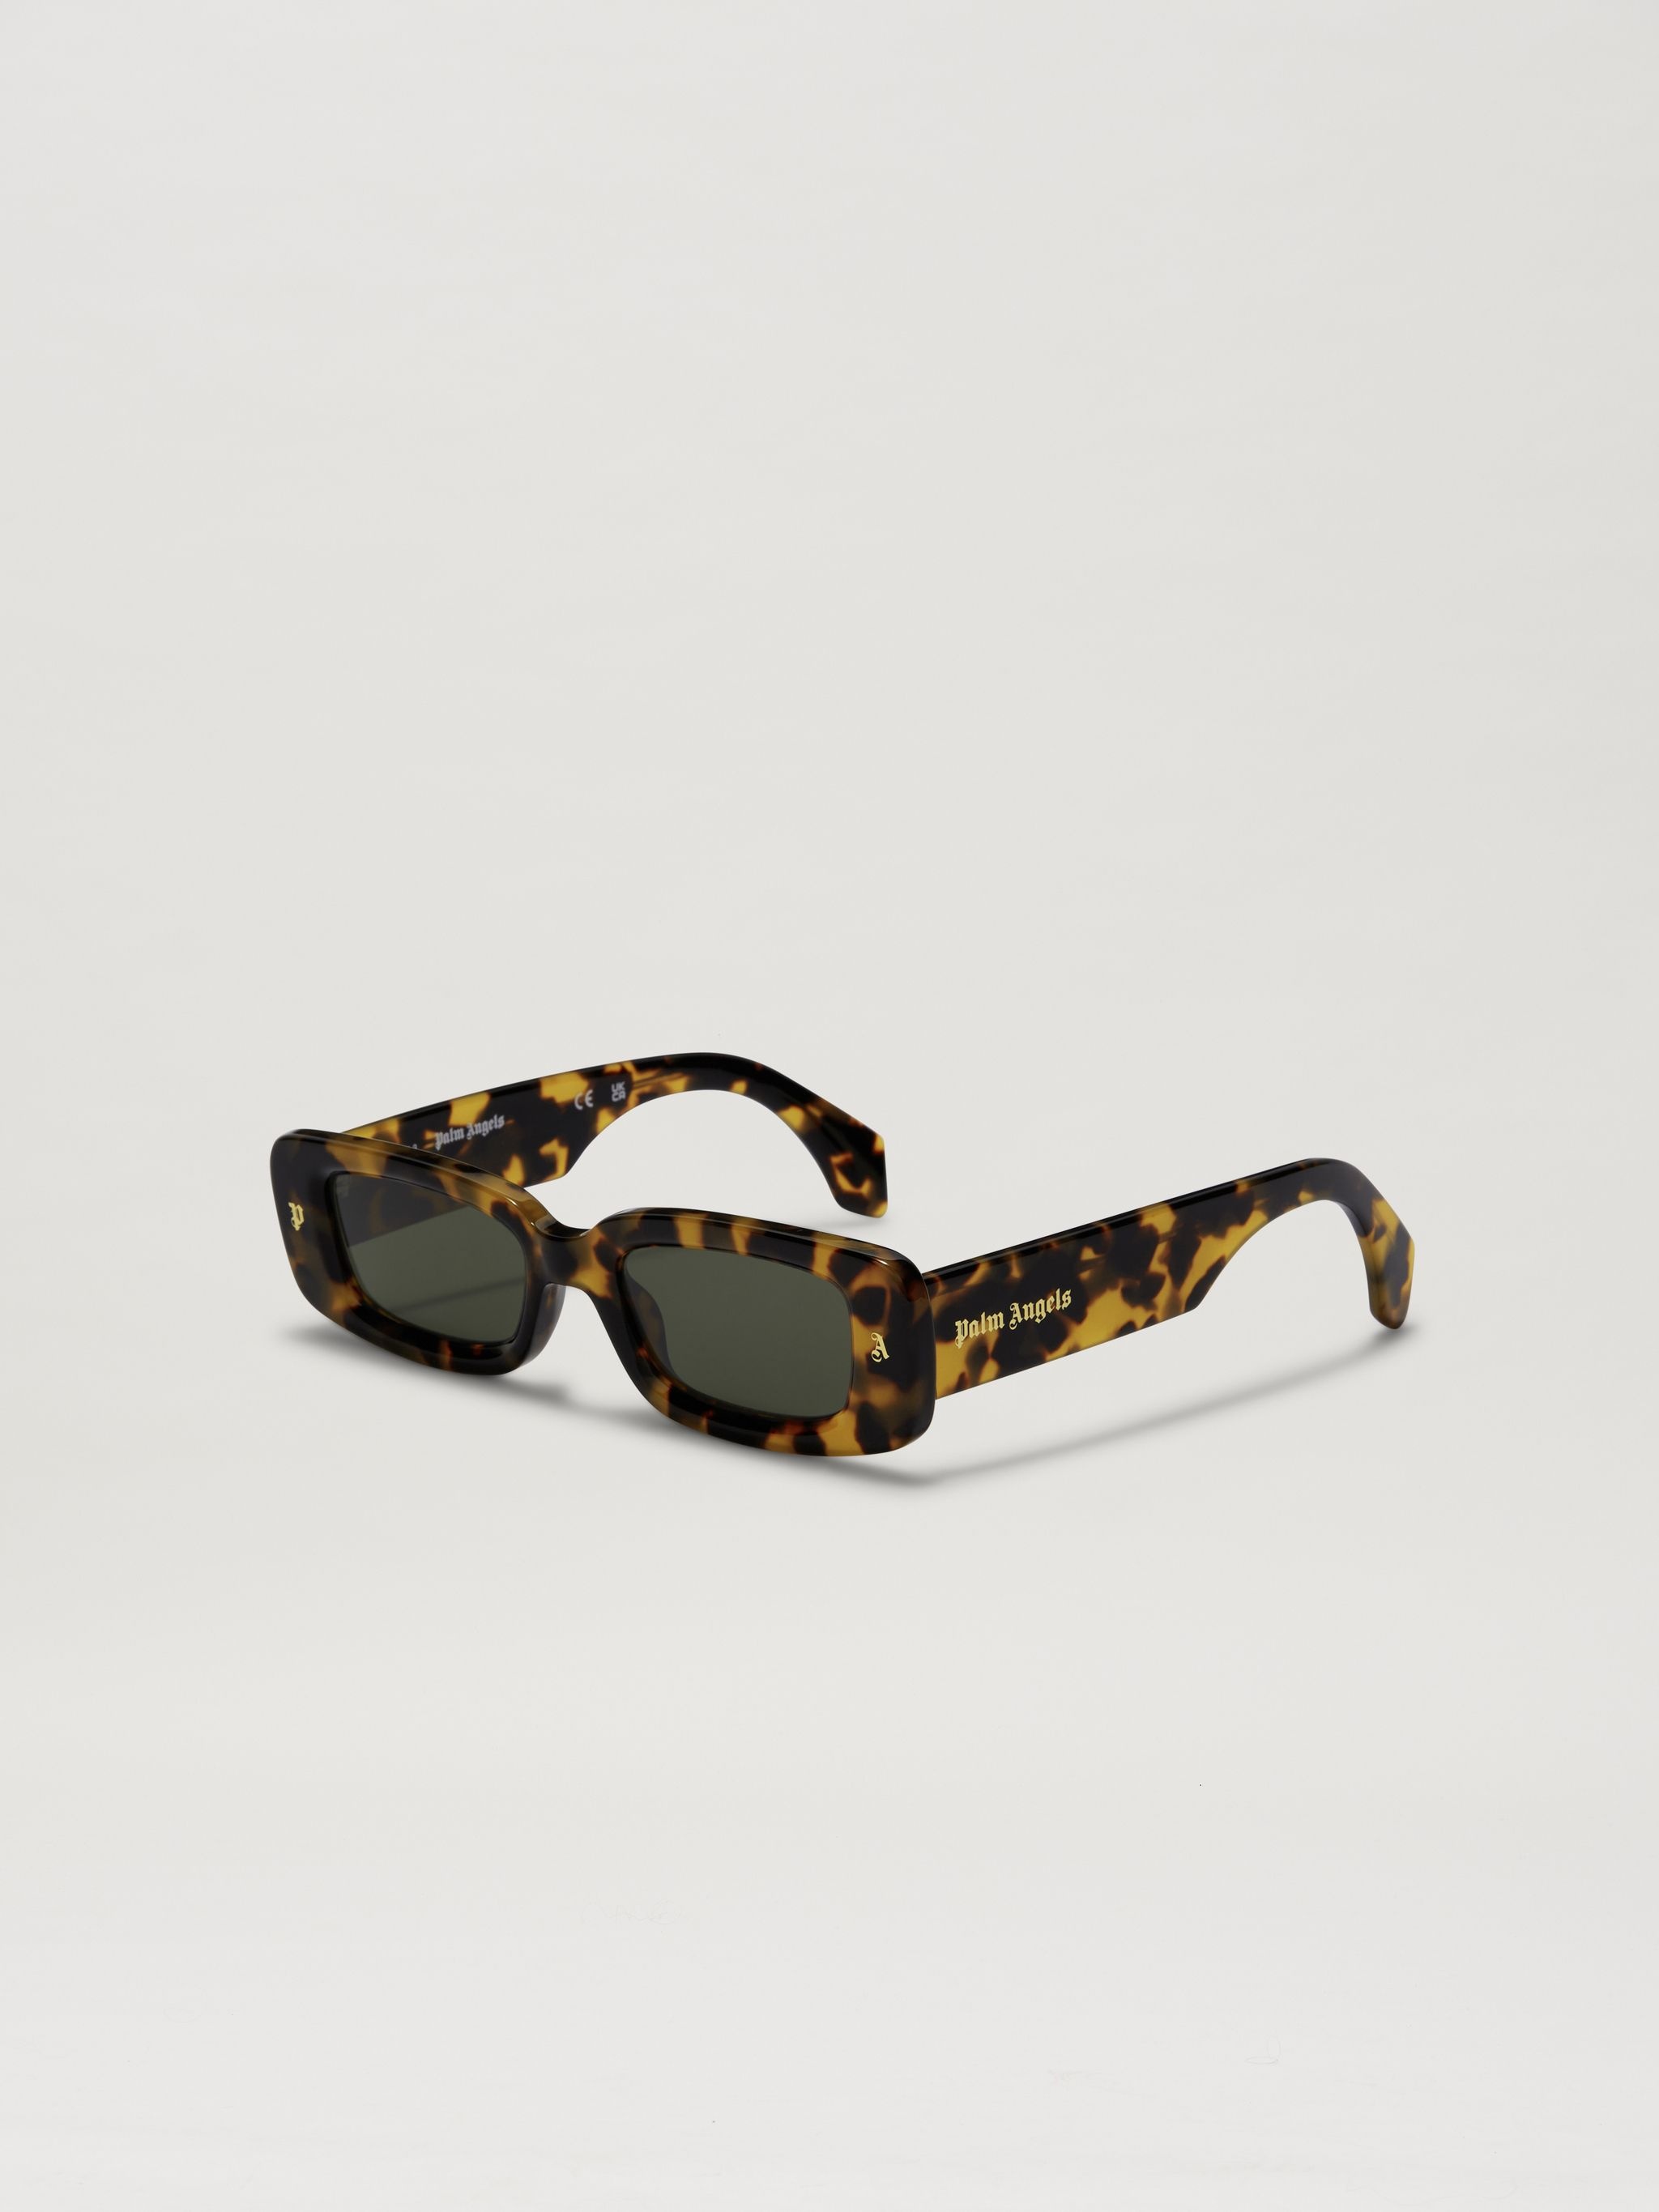 Lala Sunglasses - 1